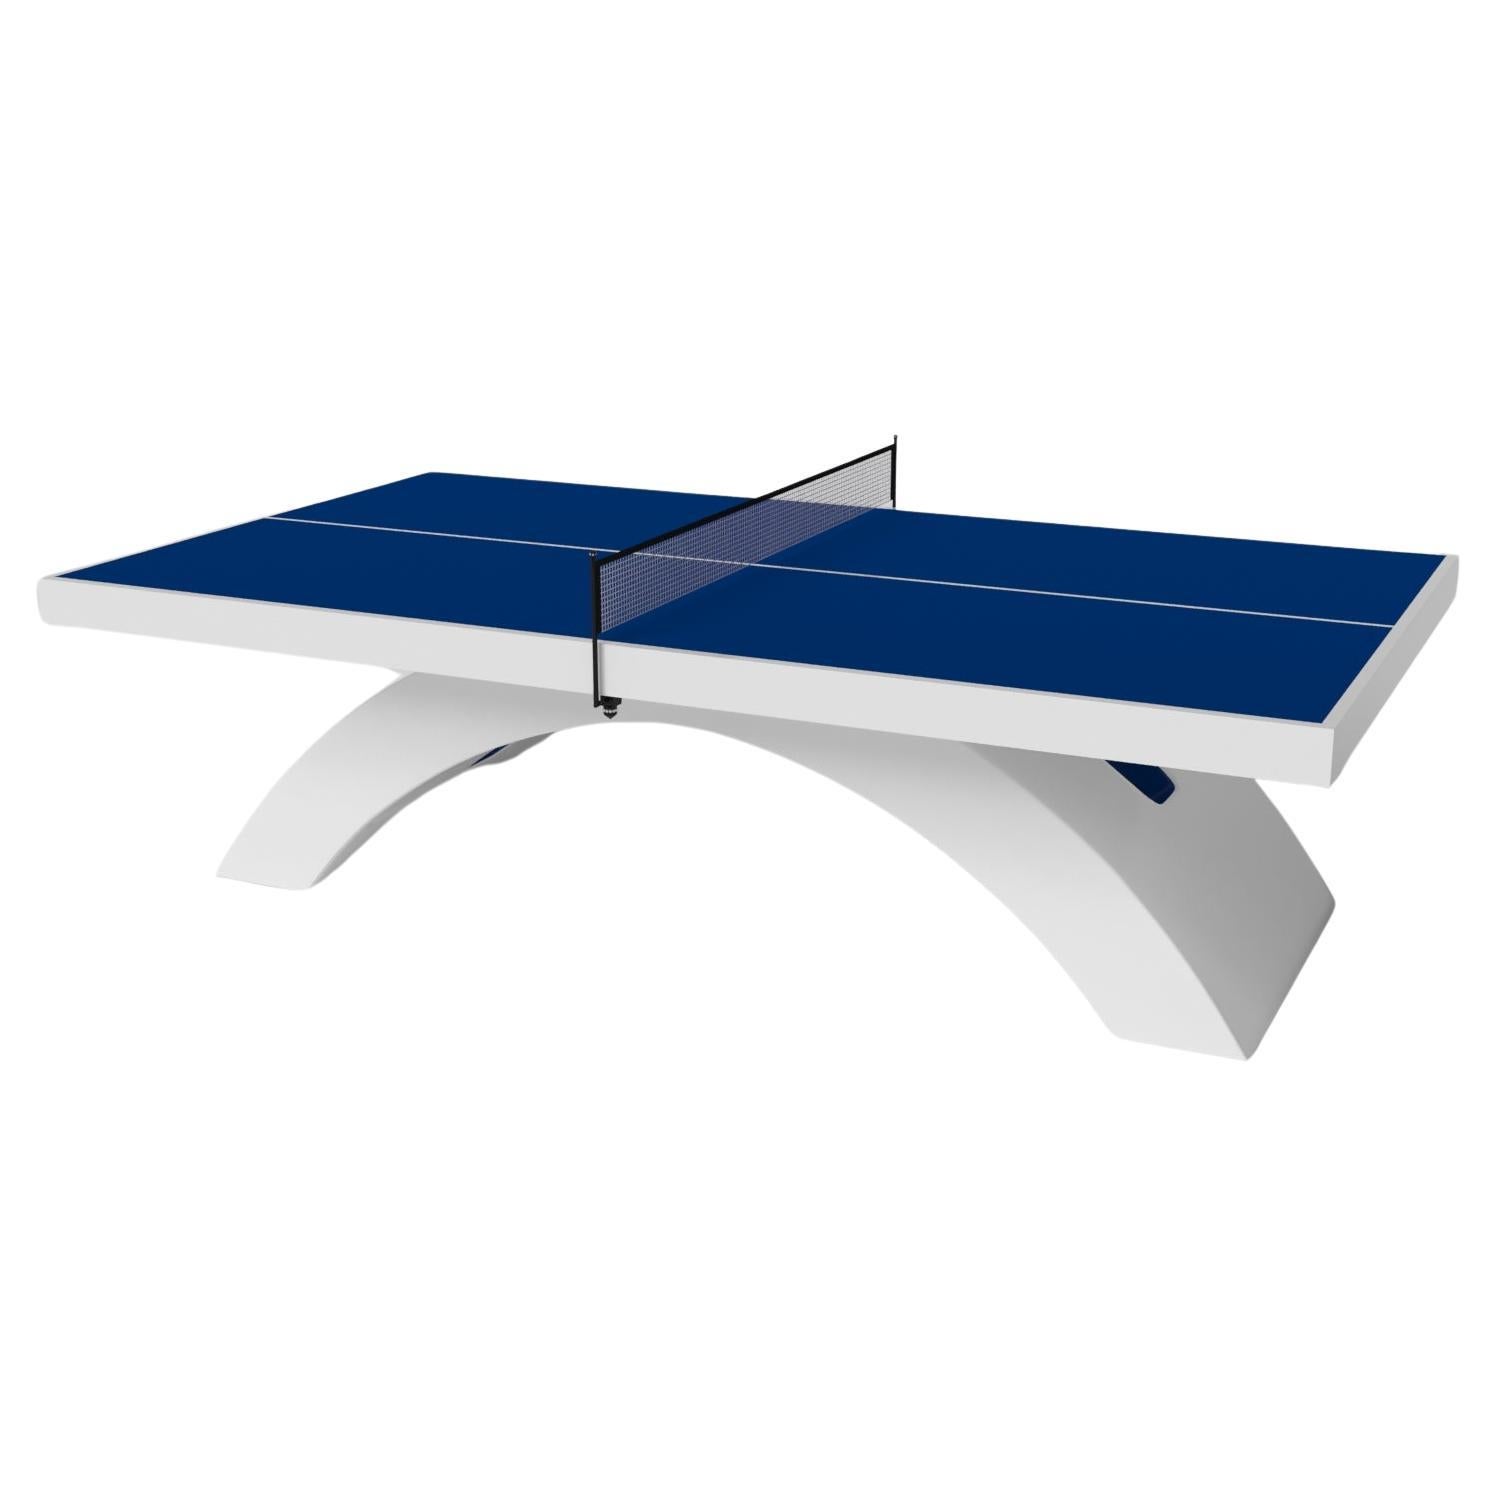 Table de tennis Zenith sur mesure / Blanc Pantone massif en 9' - Fabriqué aux États-Unis